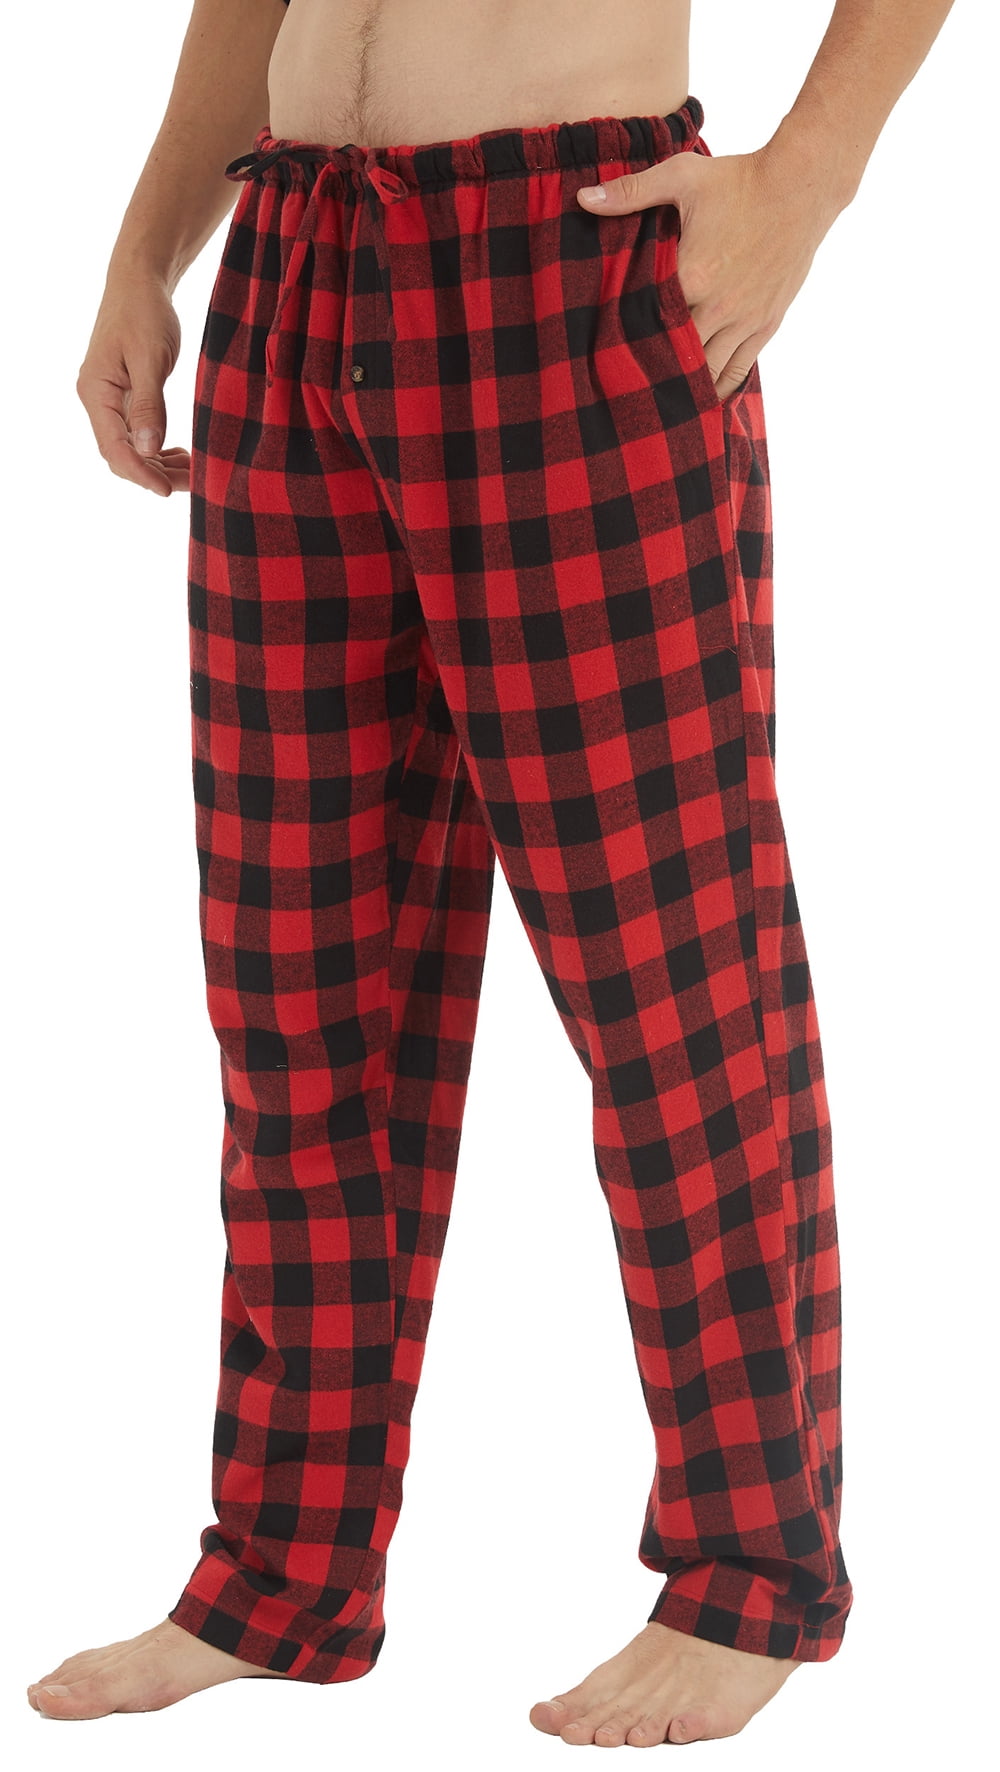 YUSHOW Men Flannel Pajama Pants Cotton Soft Red Plaid Lounge Pjs ...